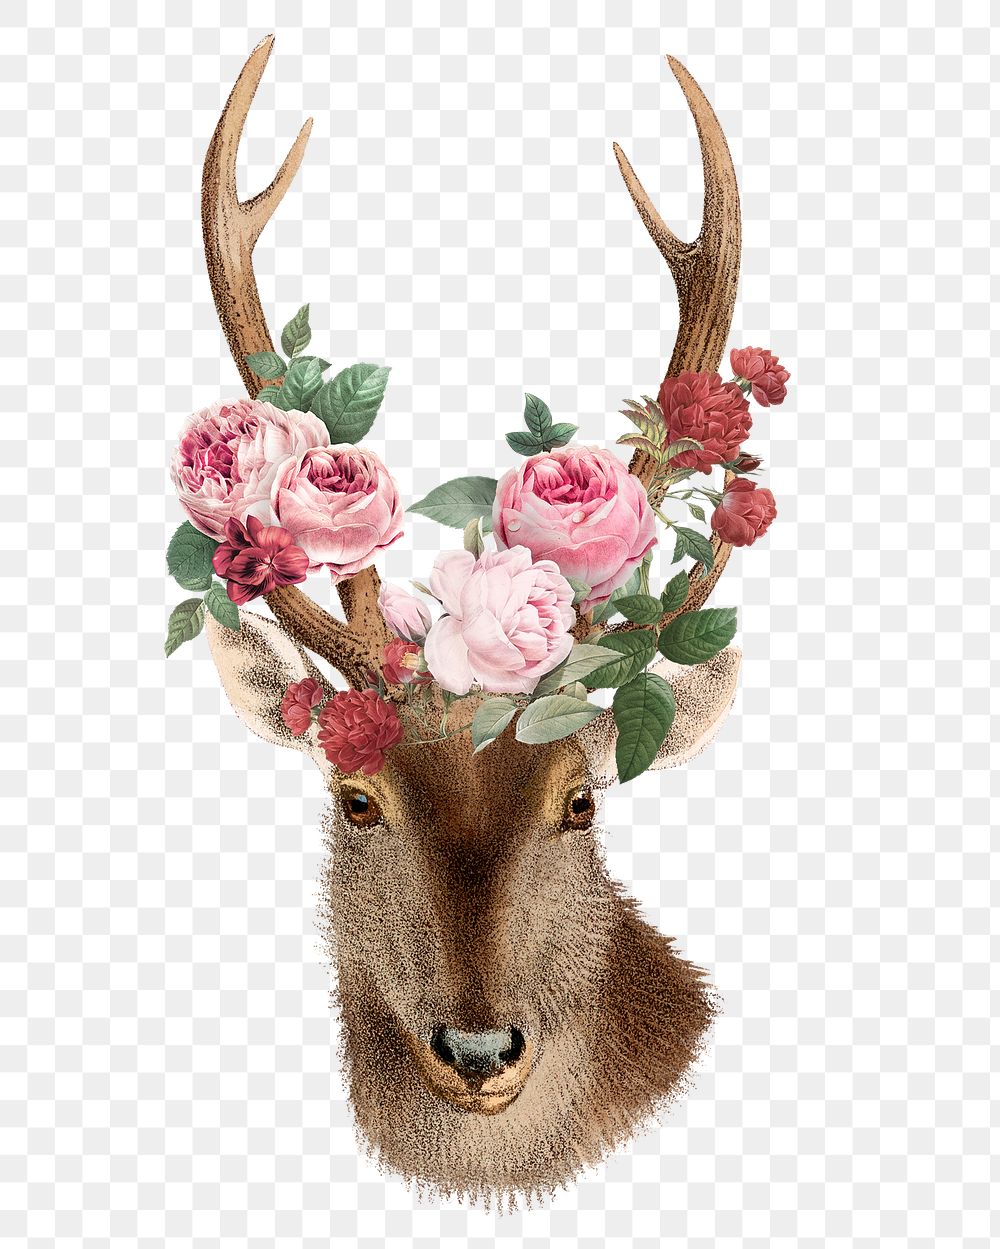 Vintage deer png sticker, animal & flower illustration, transparent background  